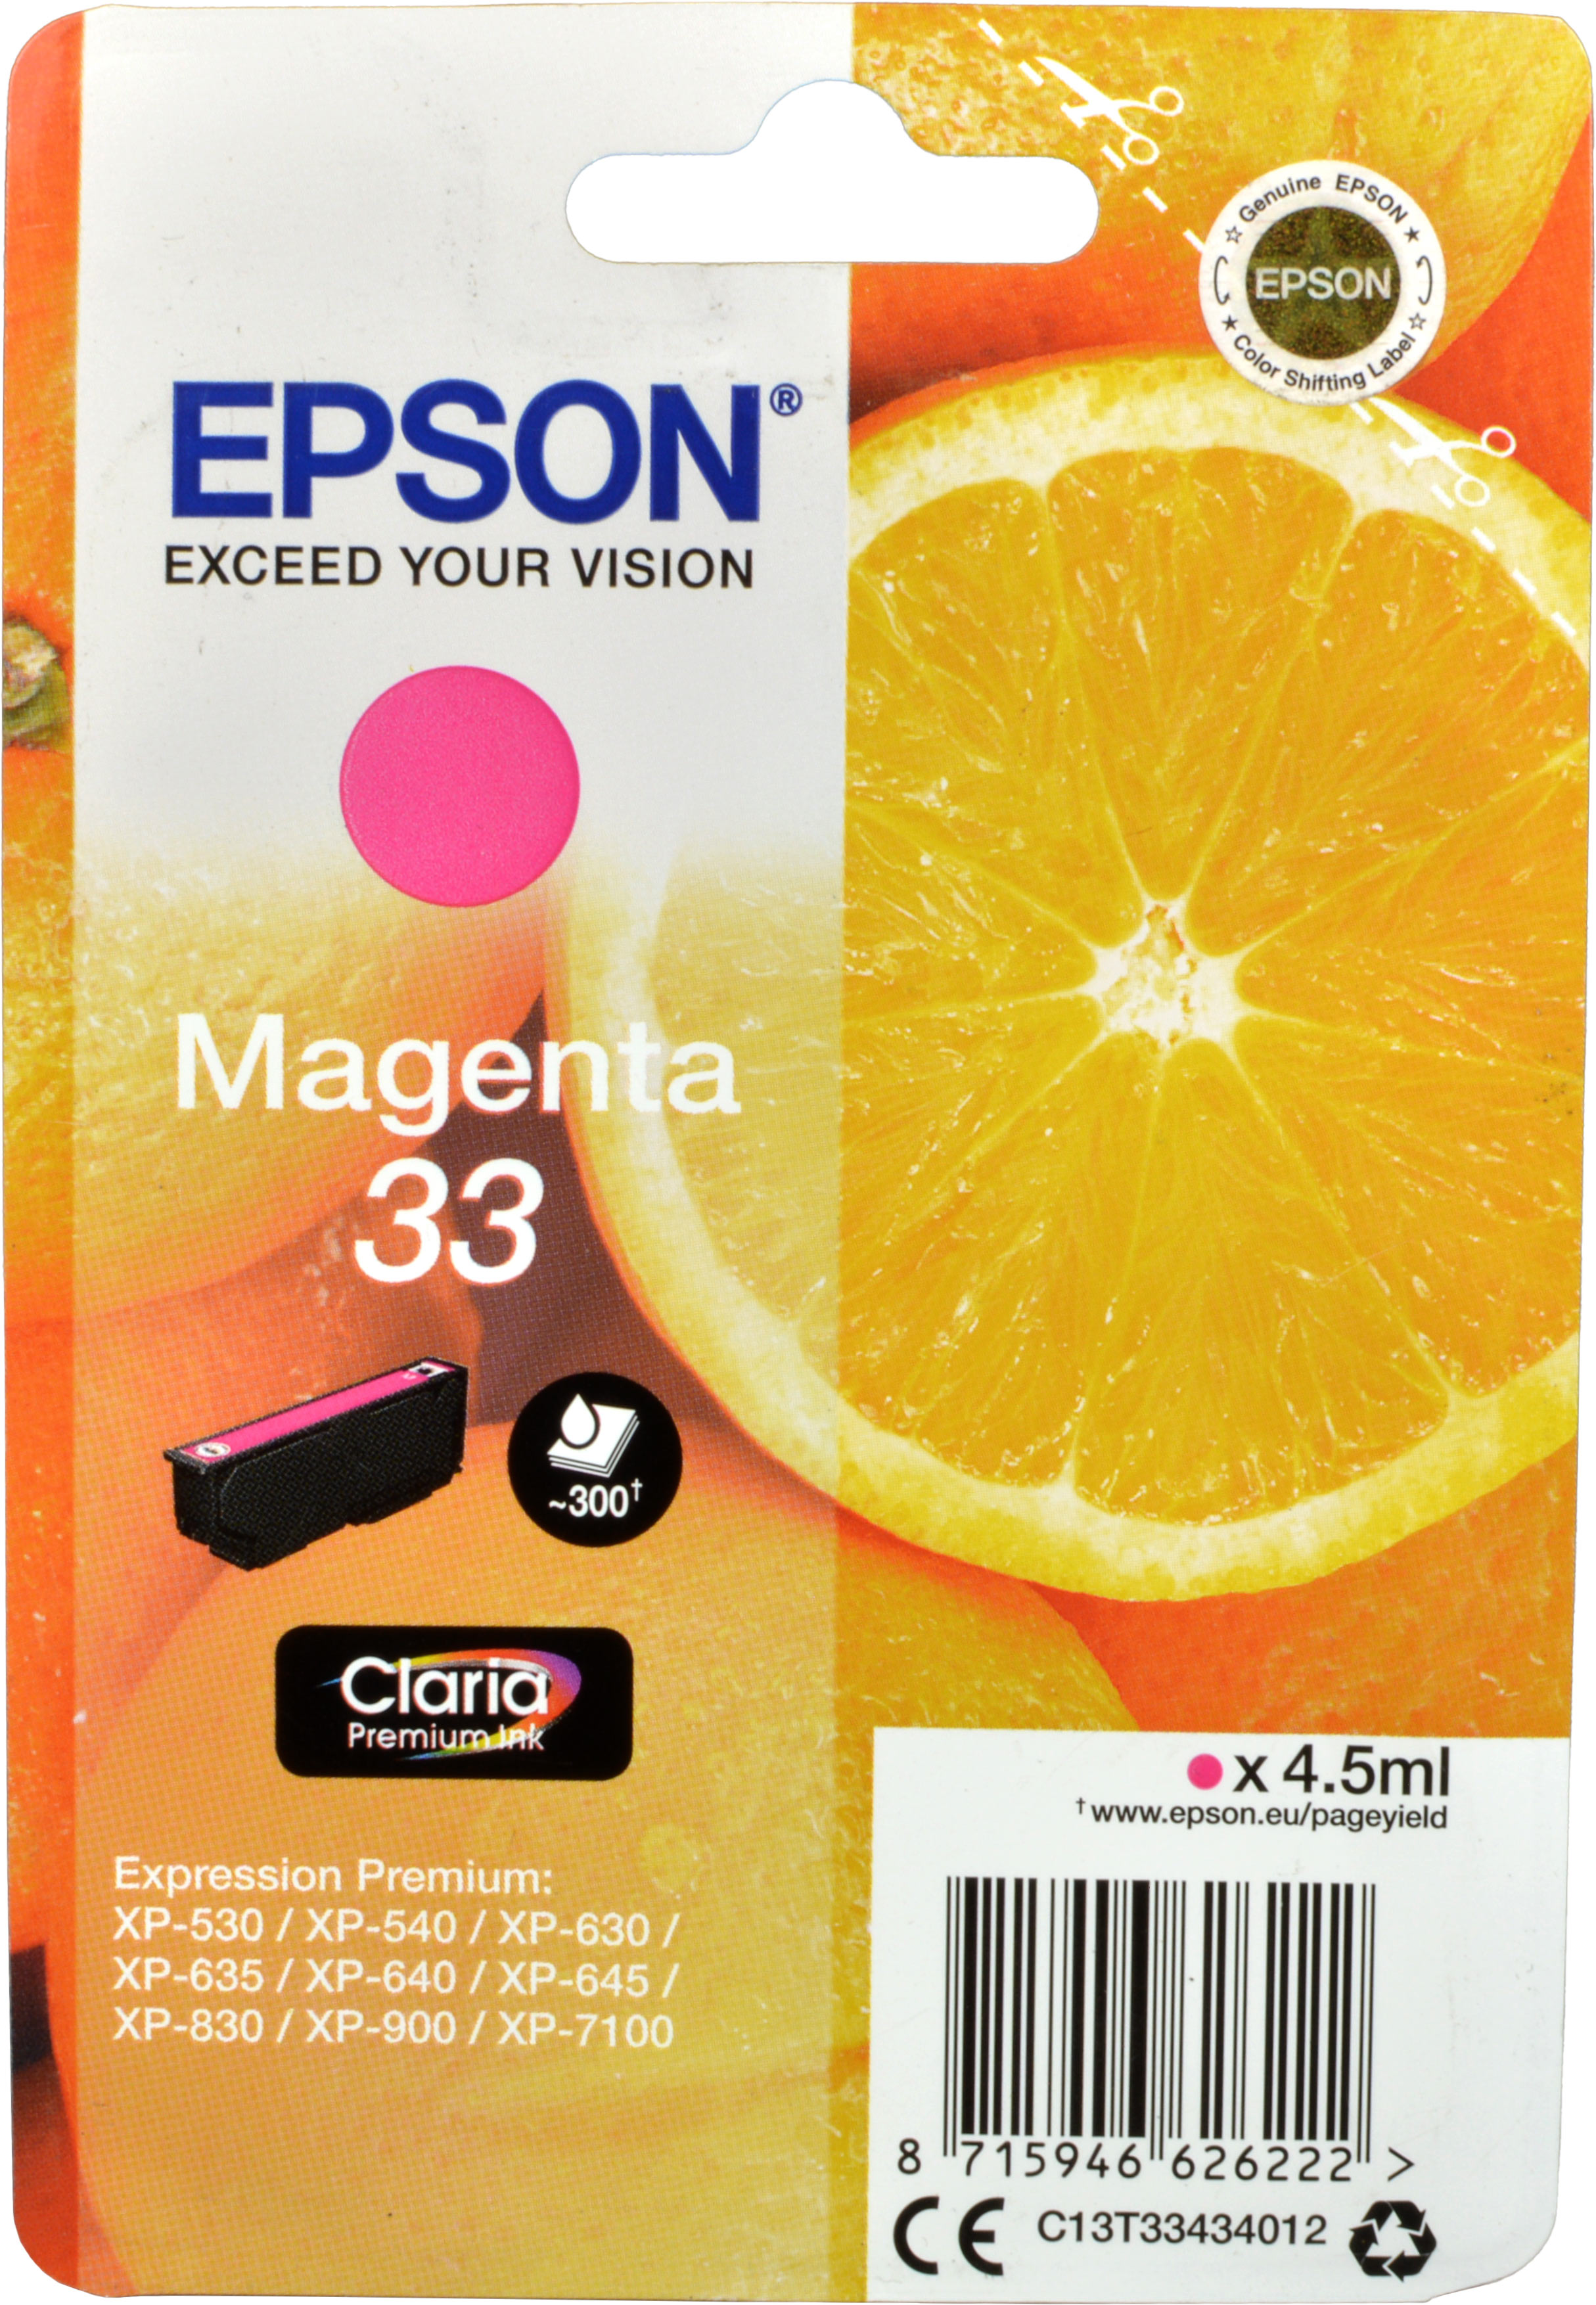 Epson Tinte C13T33434012 Magenta 33  magenta